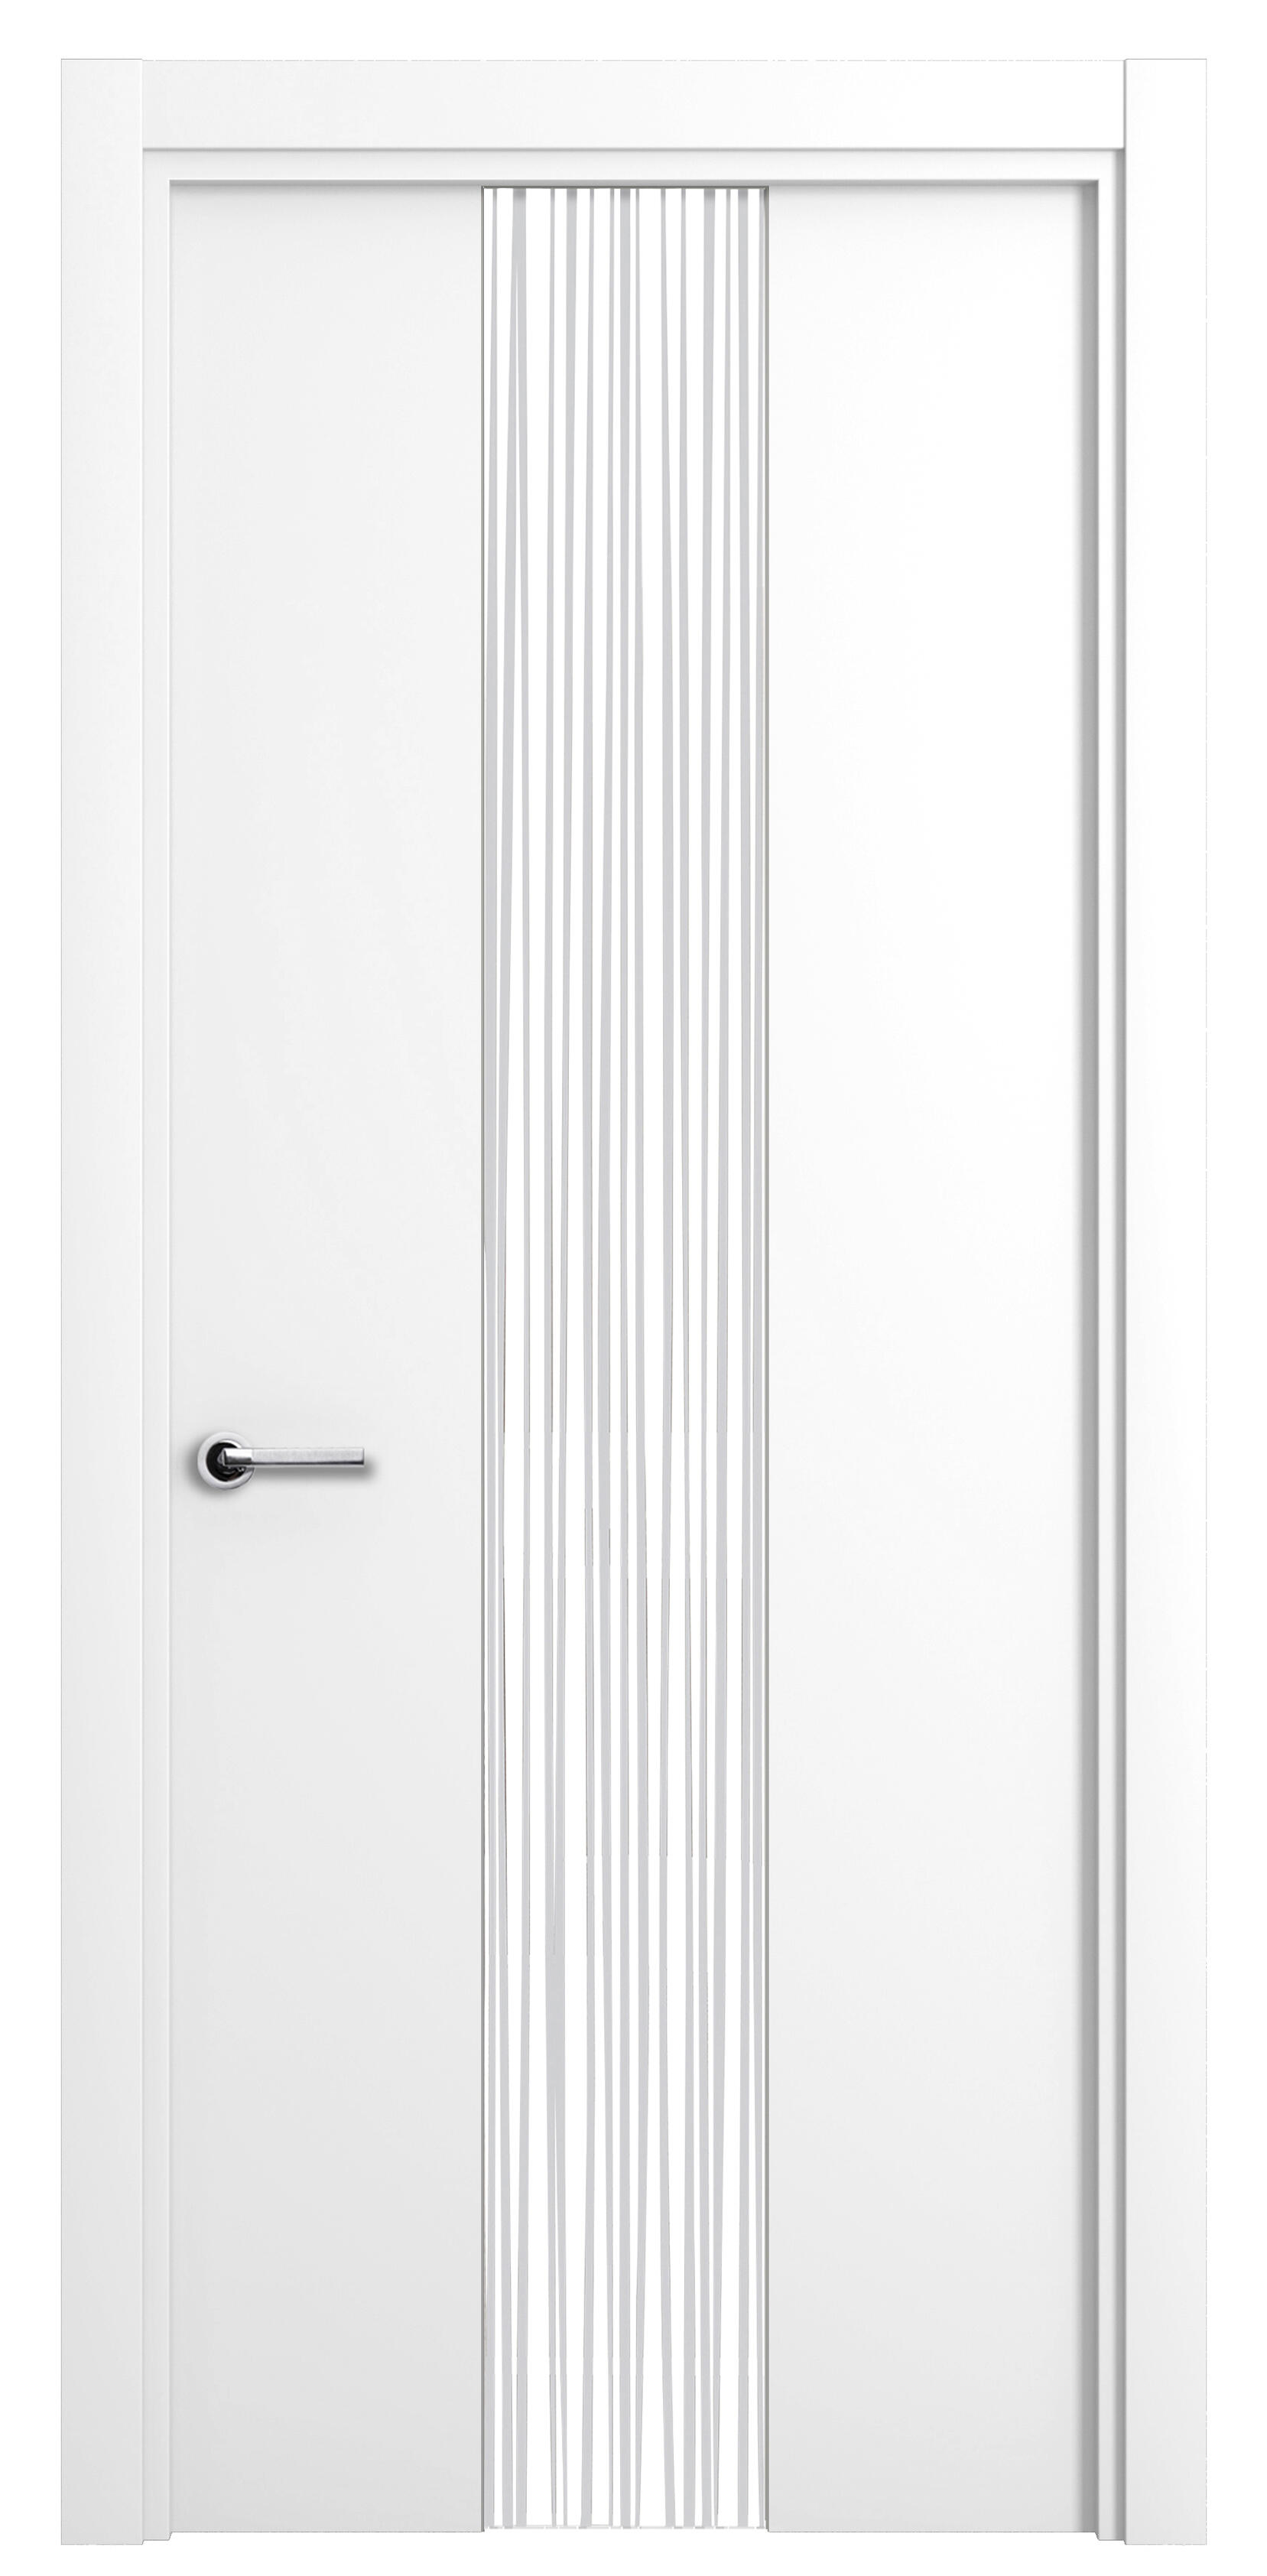 Puerta quevedo premium blanco apertura derecha con cristal 9x82.5cm